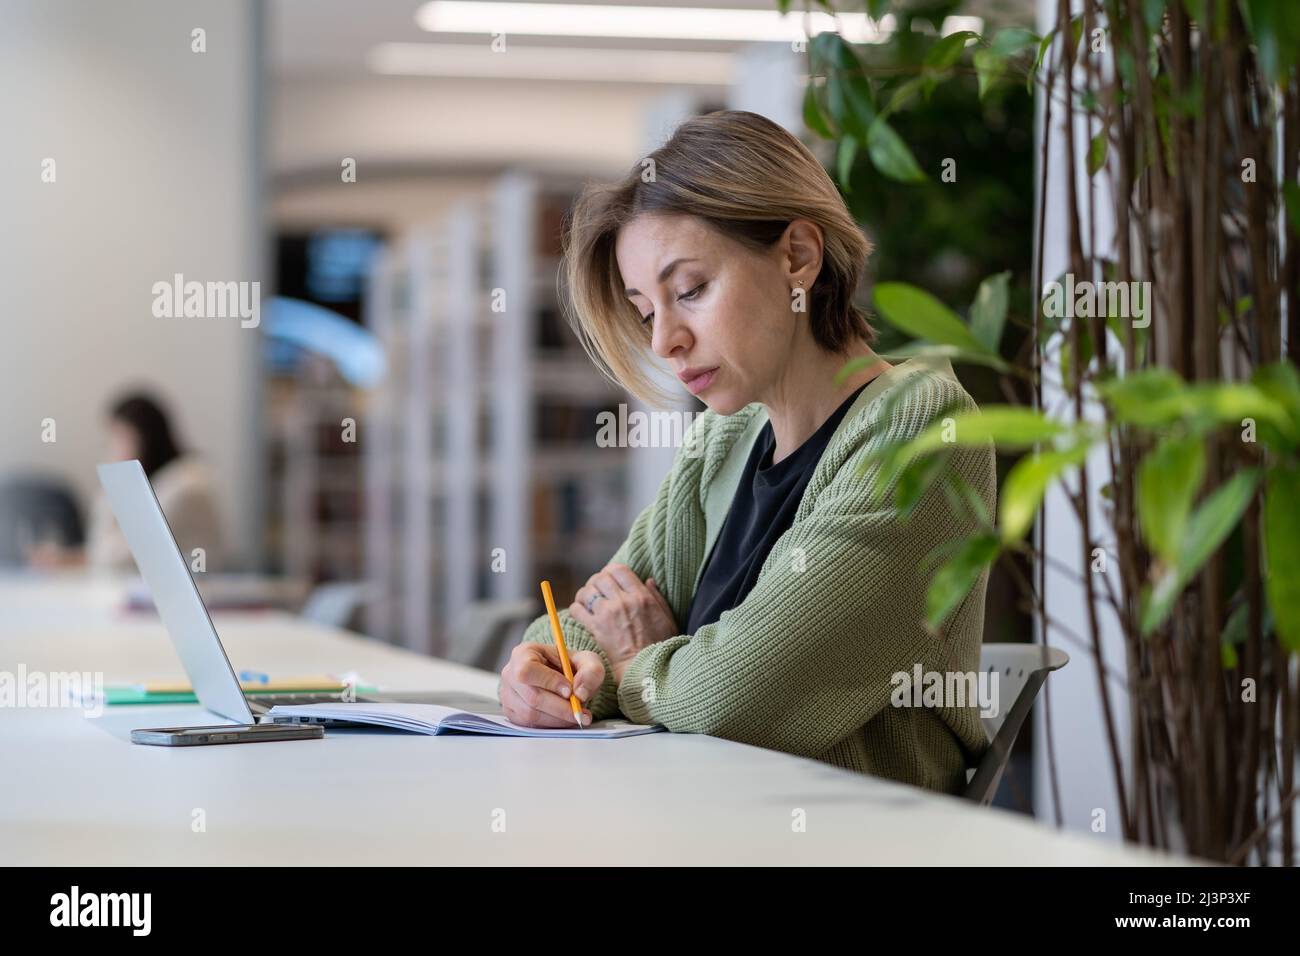 Akademische Karriere. Eine Universitätsprofessorin, die sich im Tagesplaner Notizen gemacht hat, während sie in der Bibliothek sitzt Stockfoto